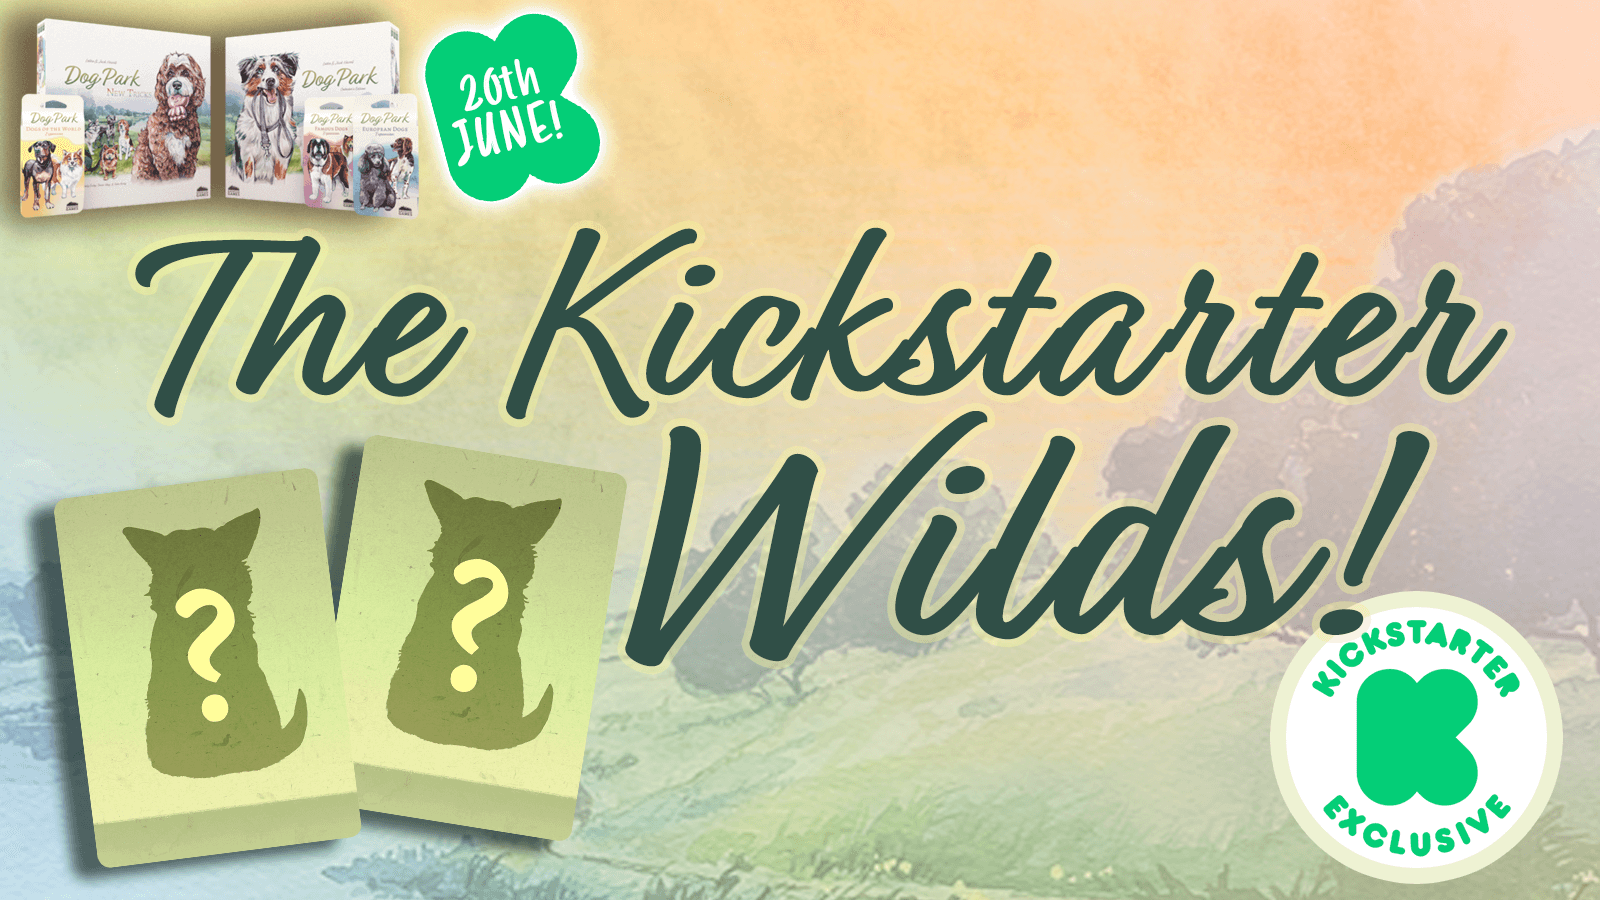 The Dog Park: New Tricks Kickstarter Wilds